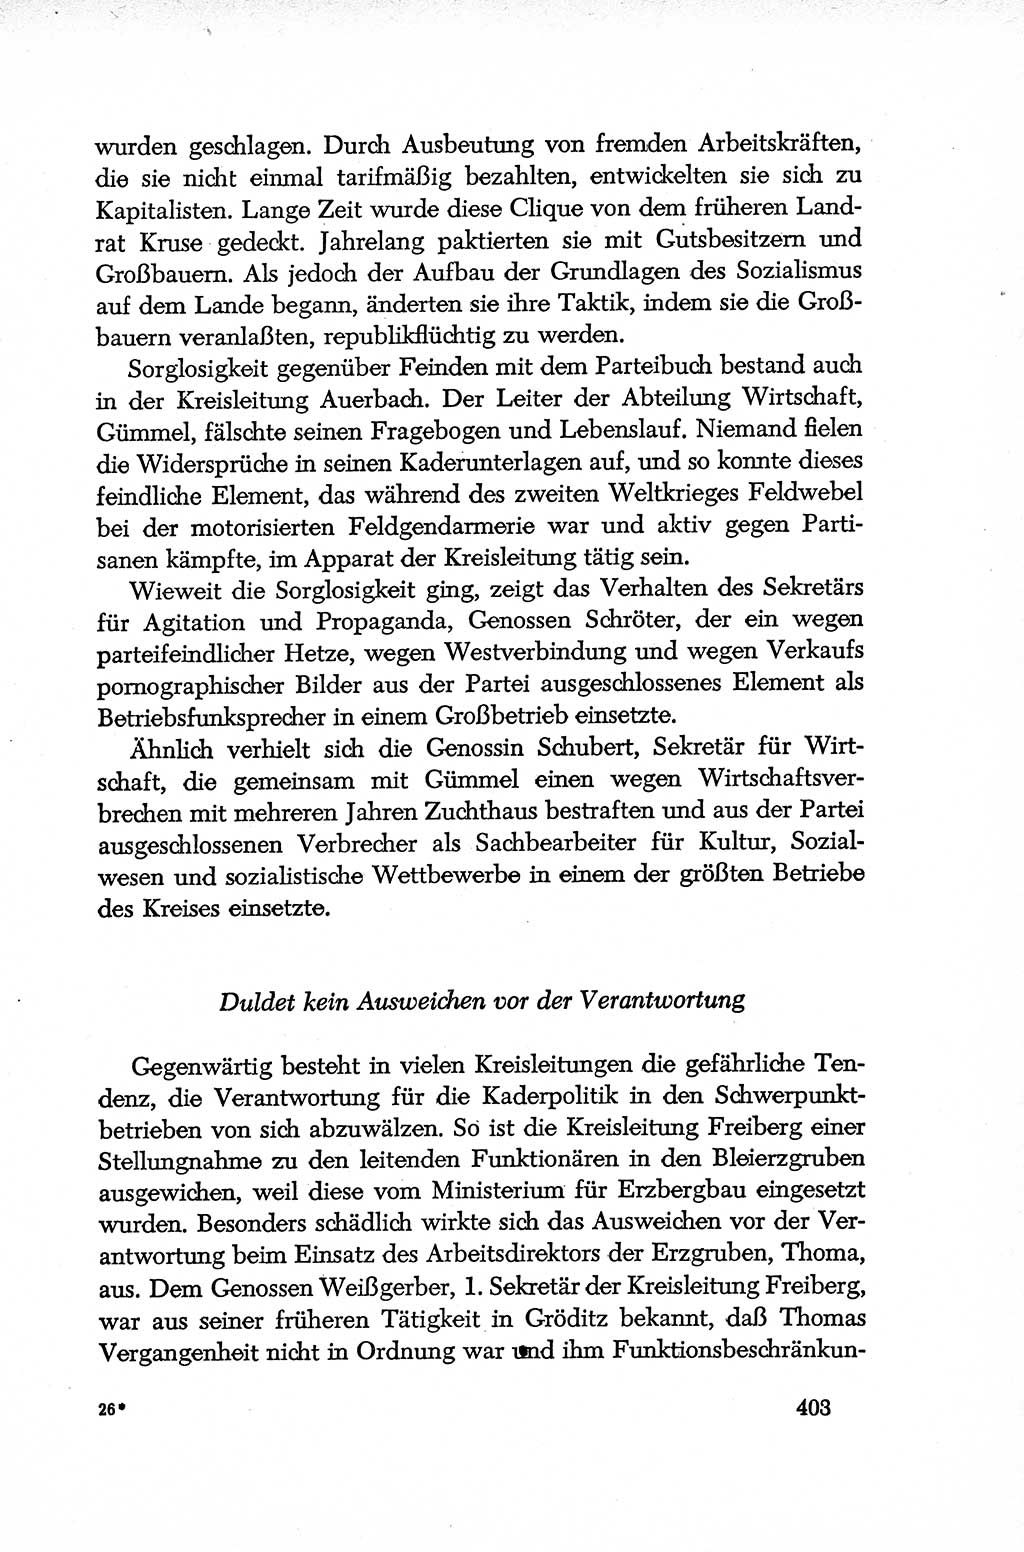 Dokumente der Sozialistischen Einheitspartei Deutschlands (SED) [Deutsche Demokratische Republik (DDR)] 1952-1953, Seite 403 (Dok. SED DDR 1952-1953, S. 403)